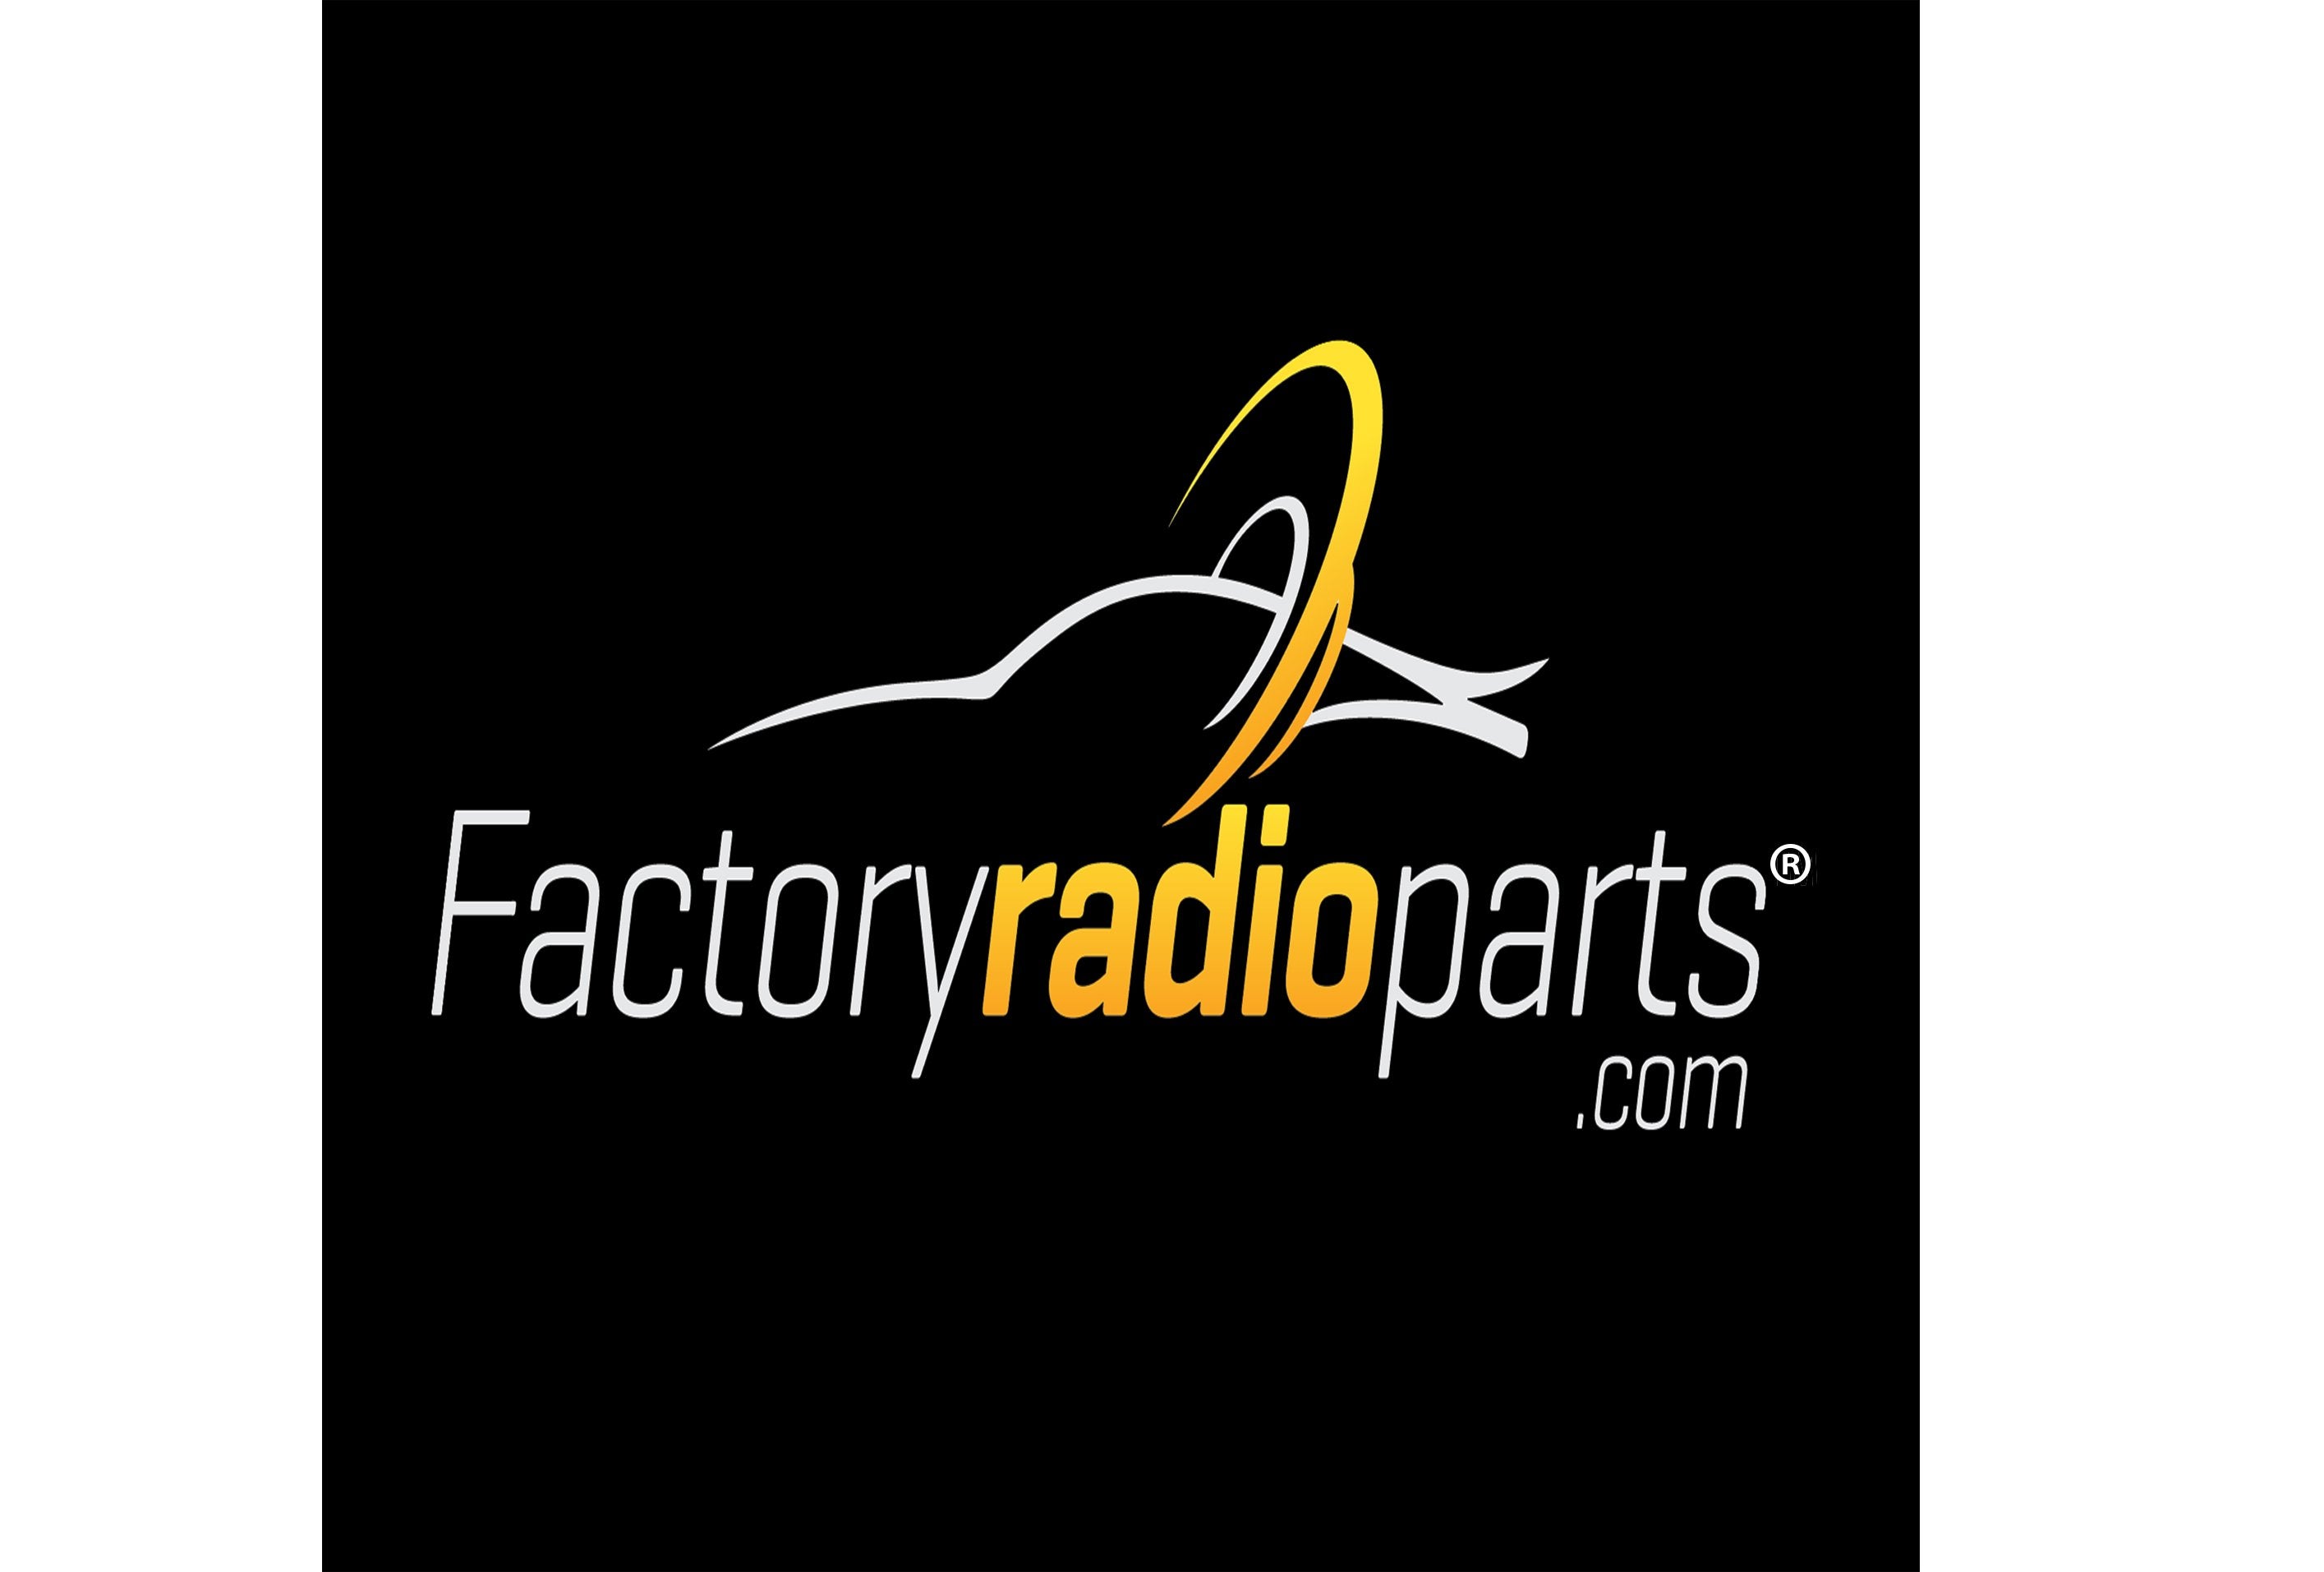 www.factoryradioparts.com